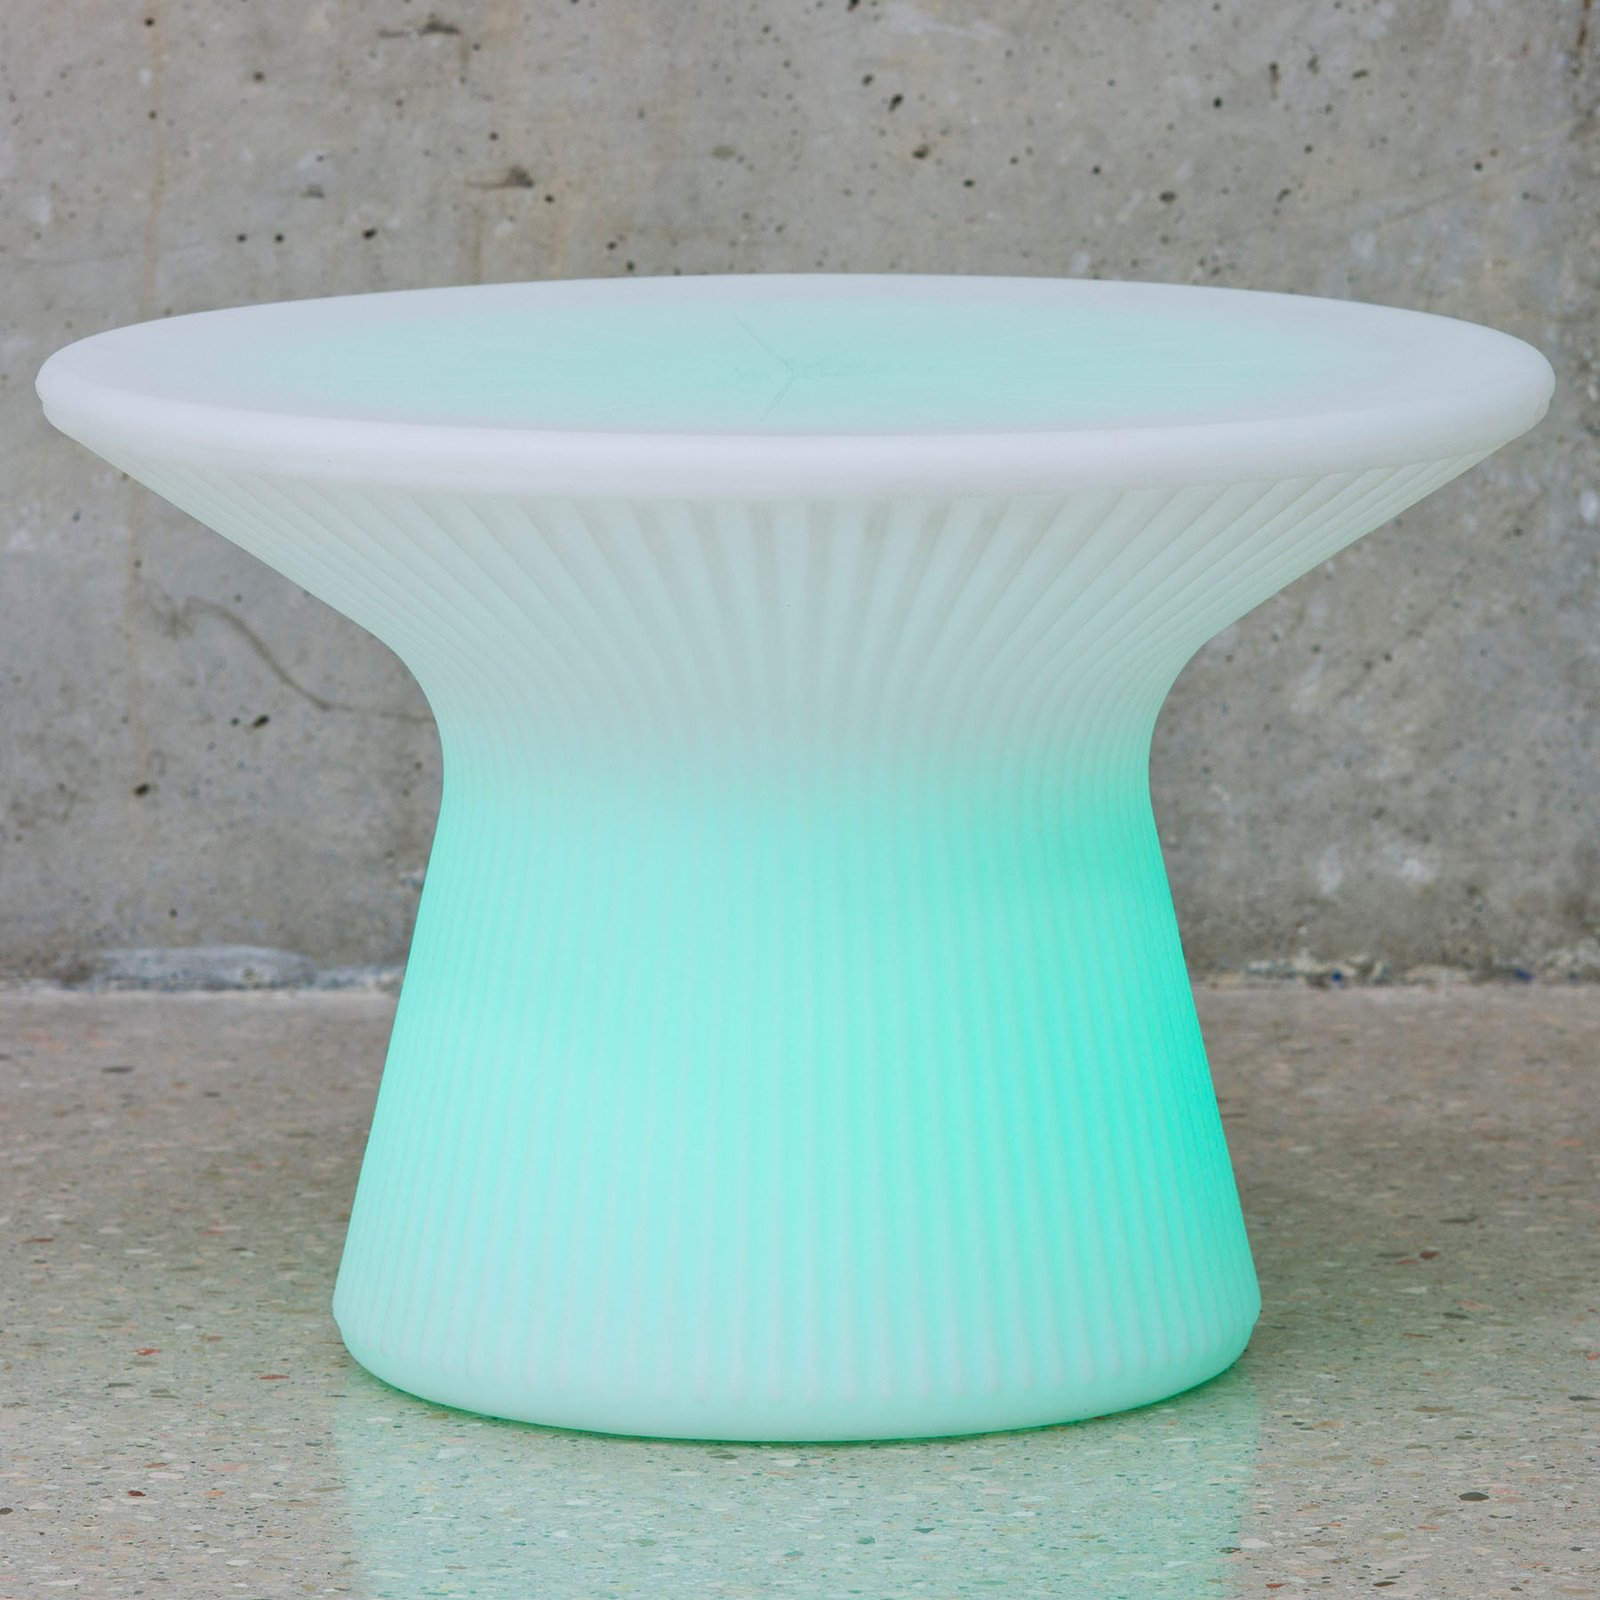 Newgarden Capri LED asztal, 39 cm magas